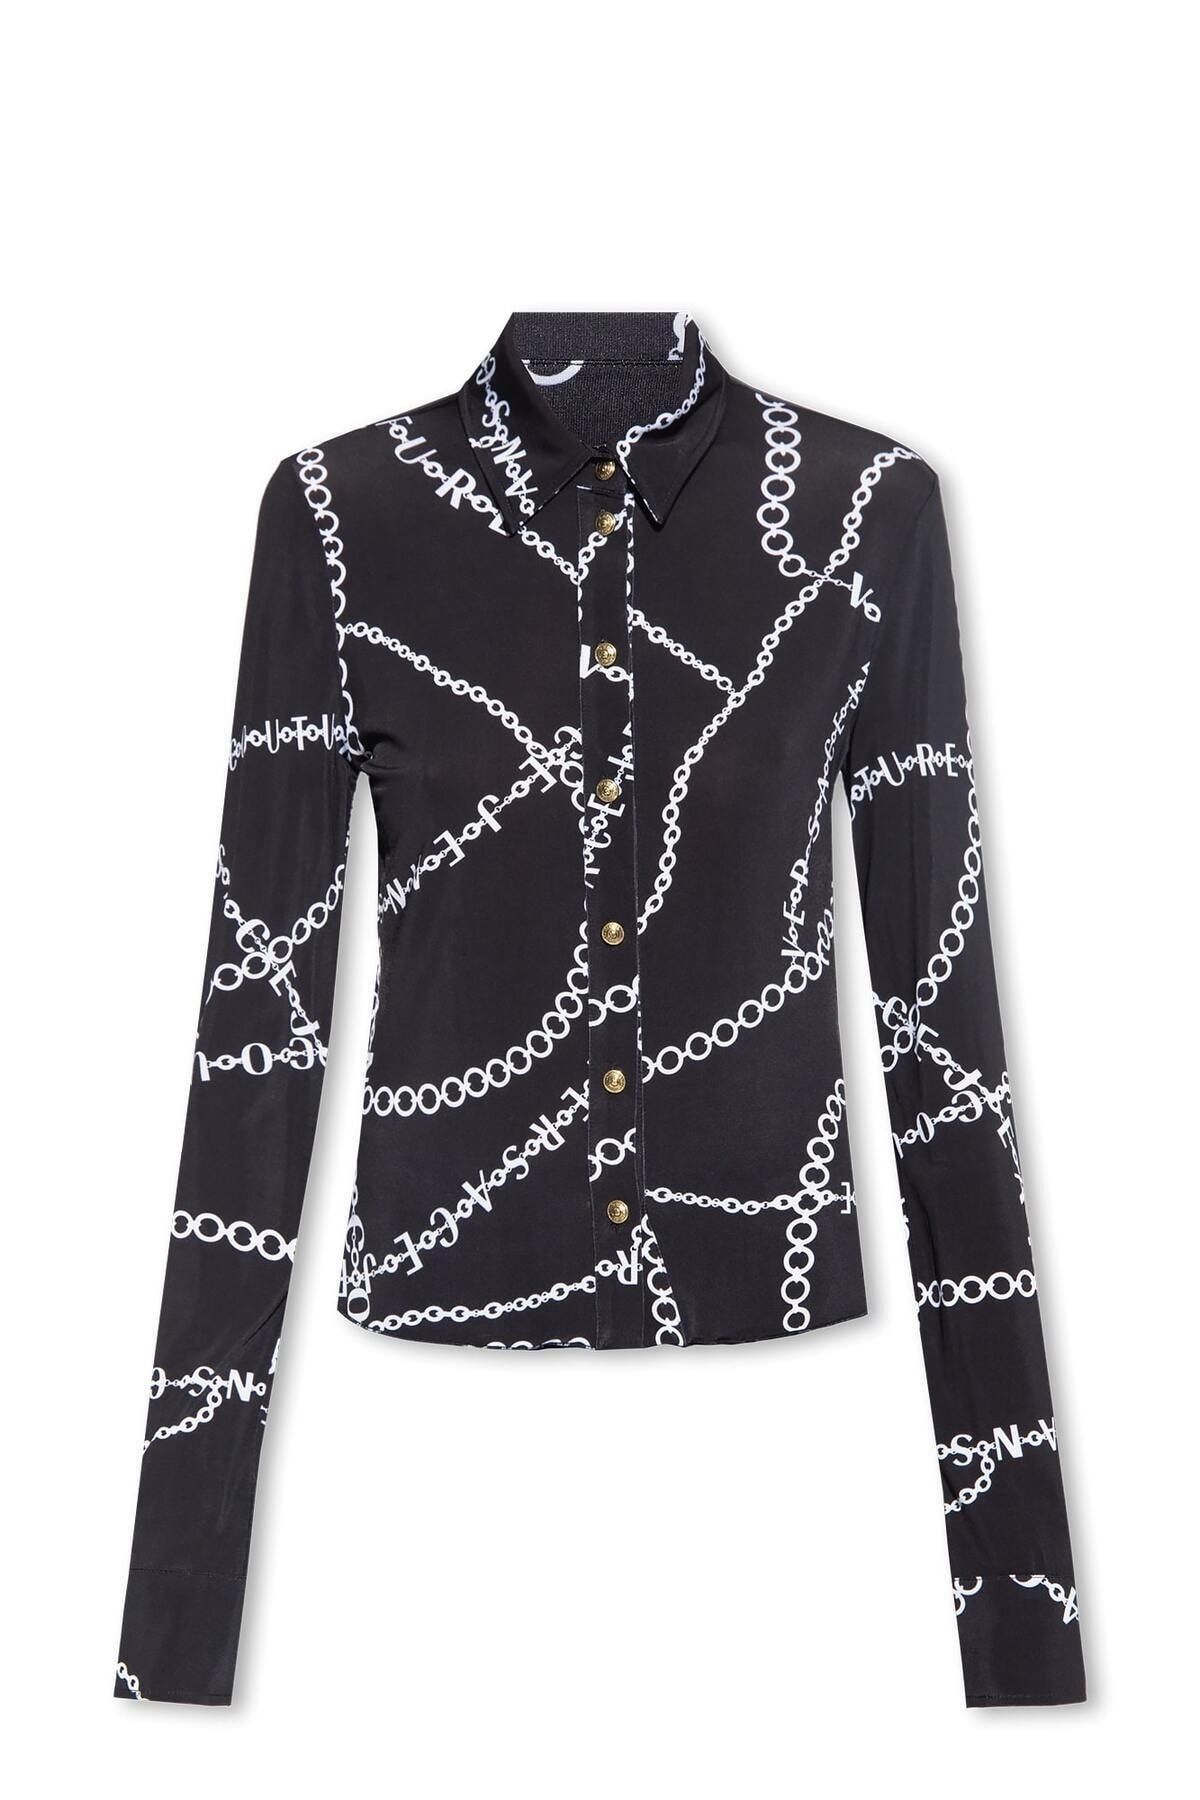 Versace Kadın Uzun Kollu Slim Fit Düğmeli Gömlek Siyah Gömlek 75HAL213 JS201-899